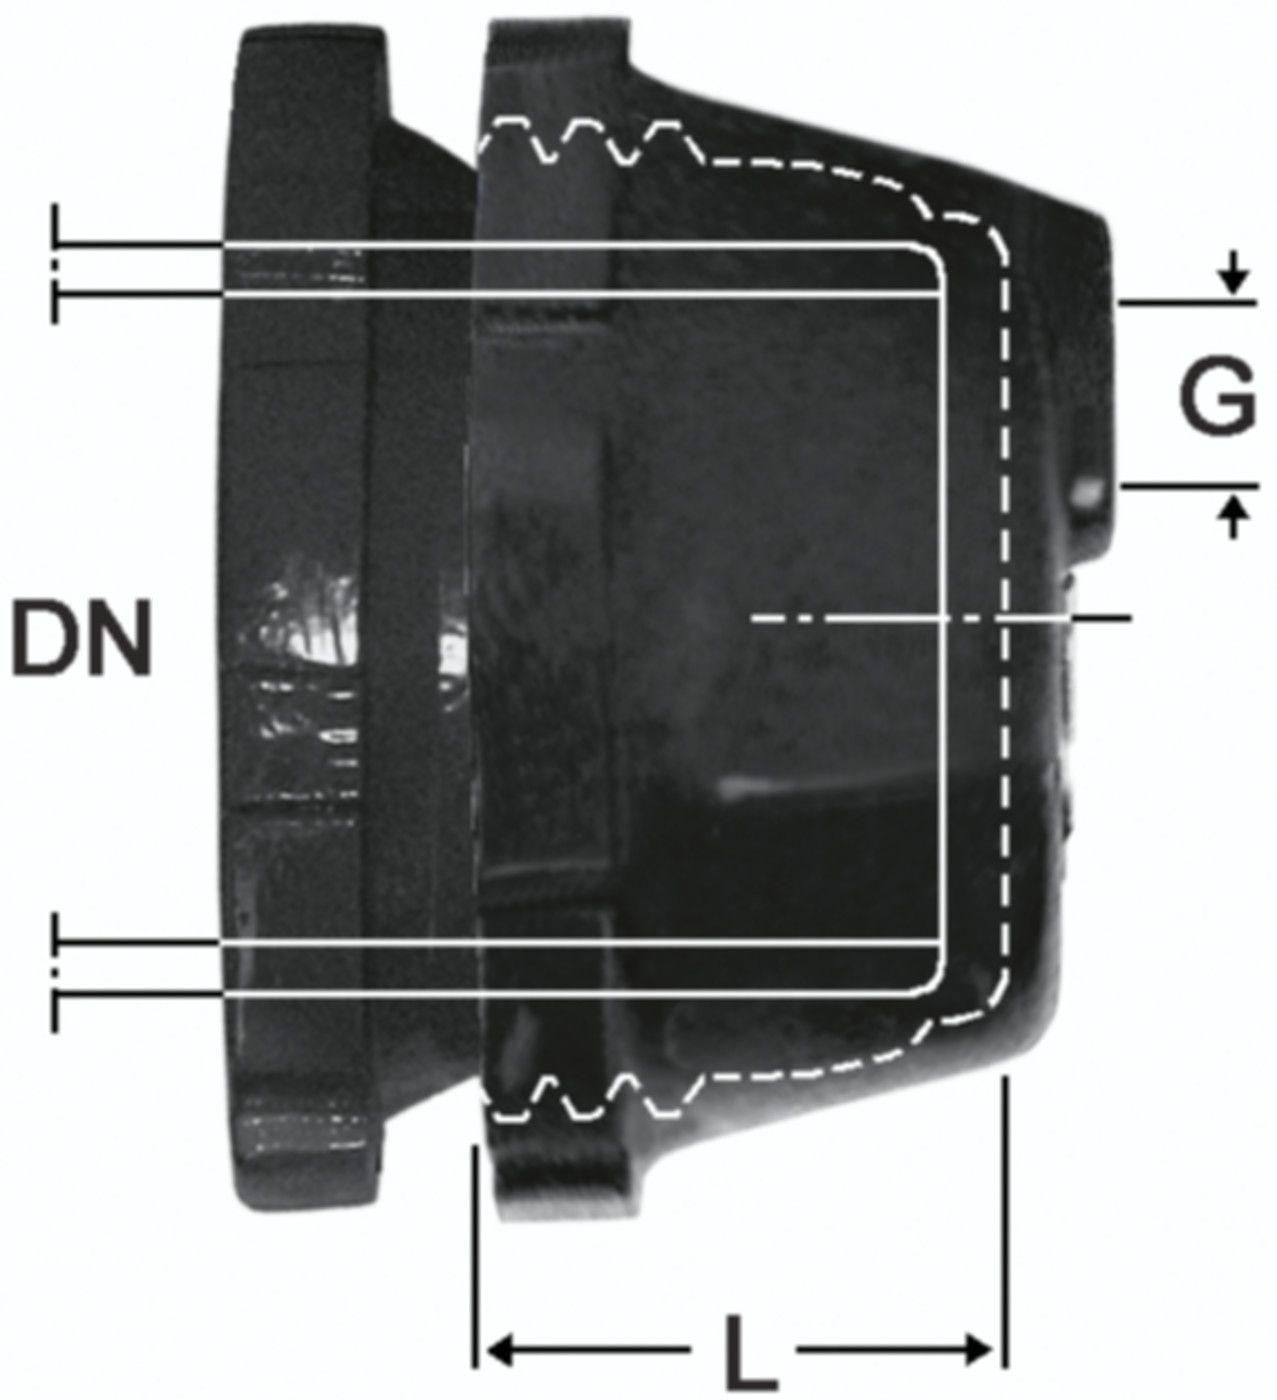 SM-Verschlusskappe Fig. 2395 DN 300 - 2" - Von Roll Schraubmuffenformstücke